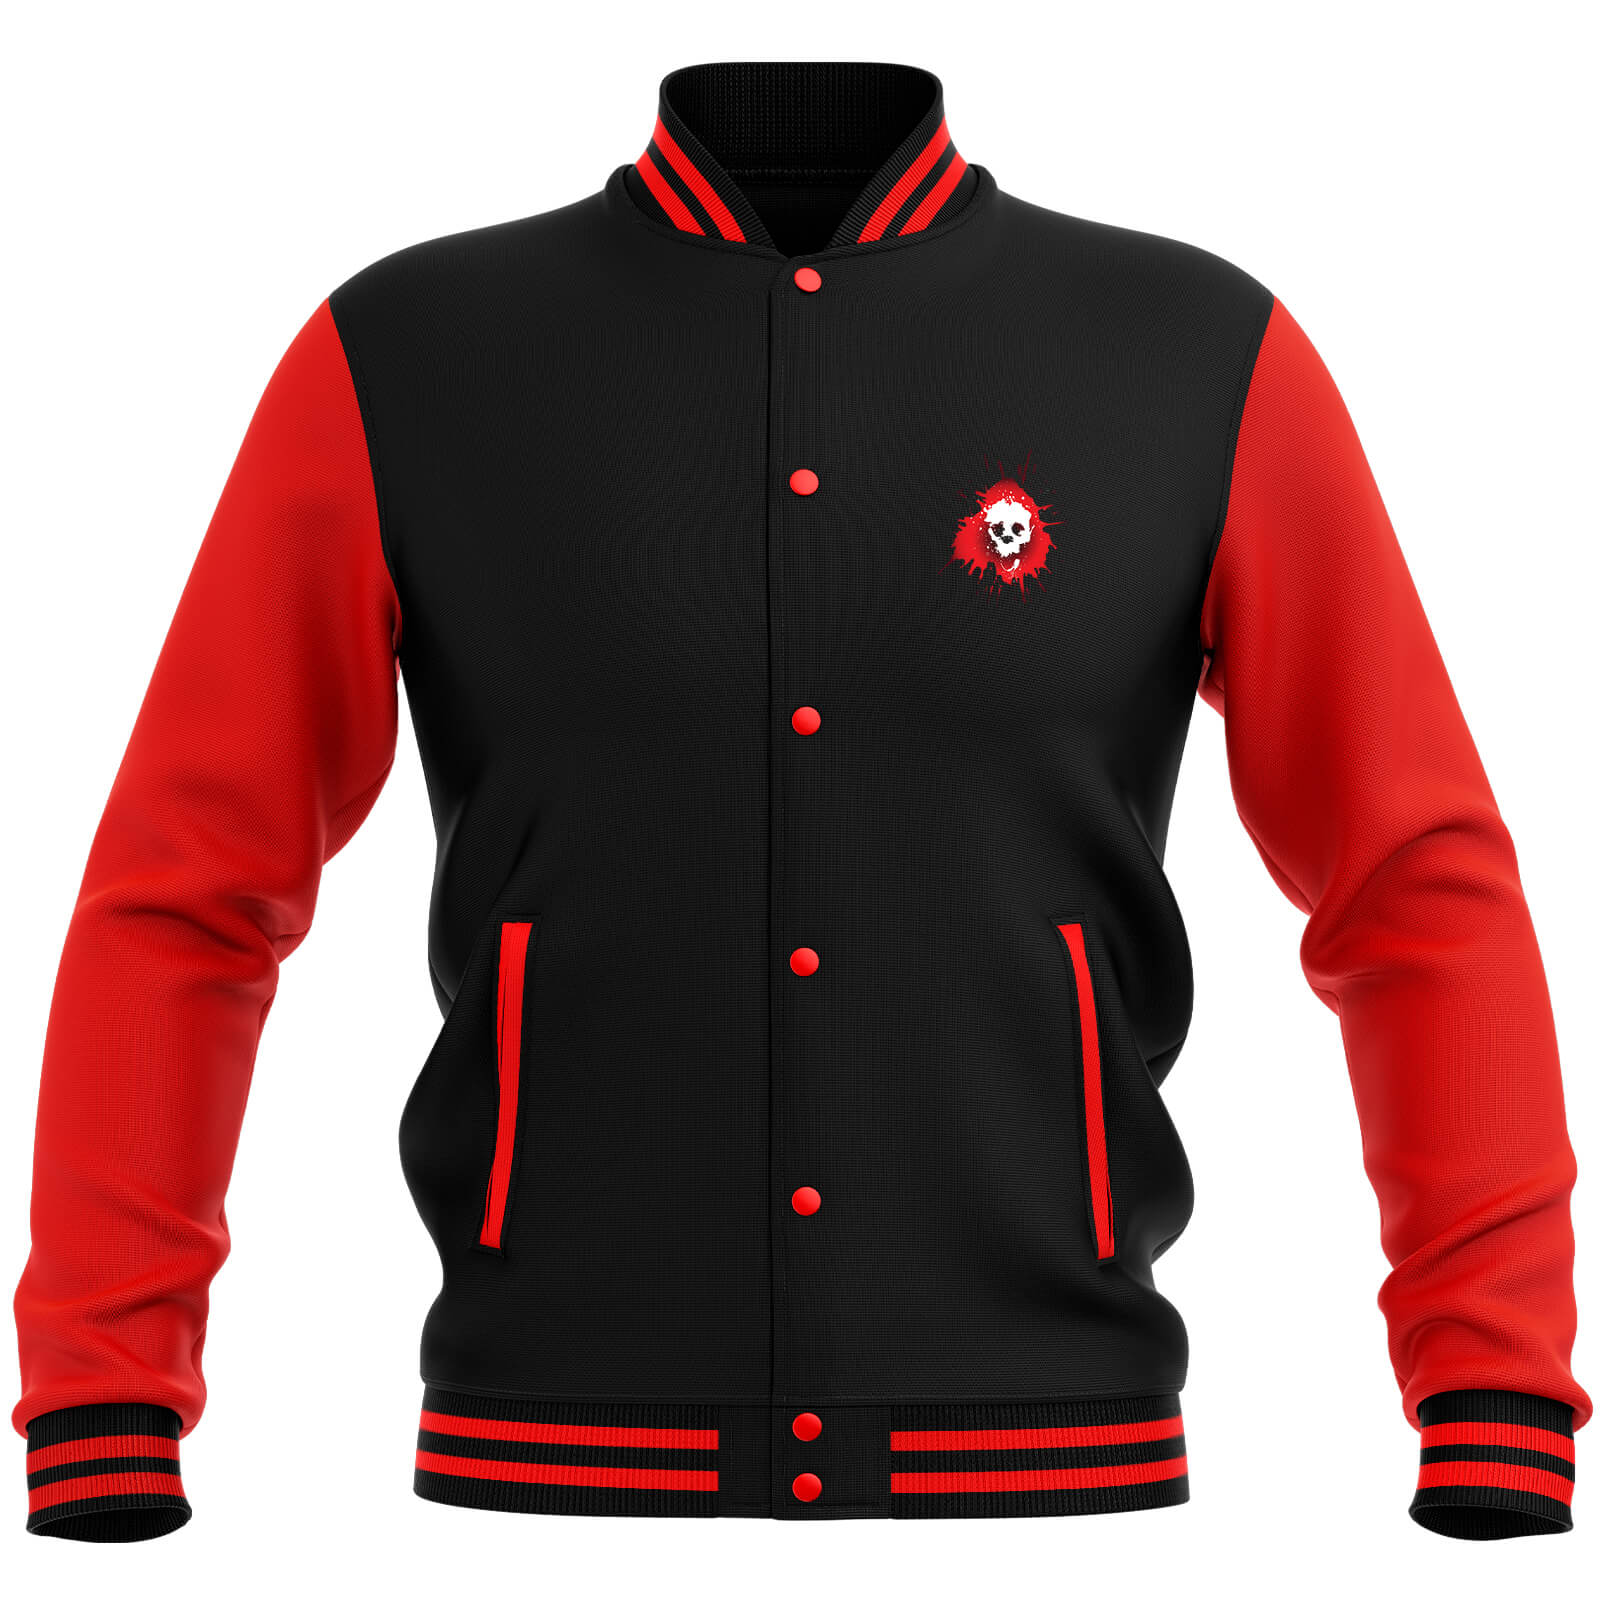 Skullsplat Varsity Jacket - Red/Black - XXL - Black